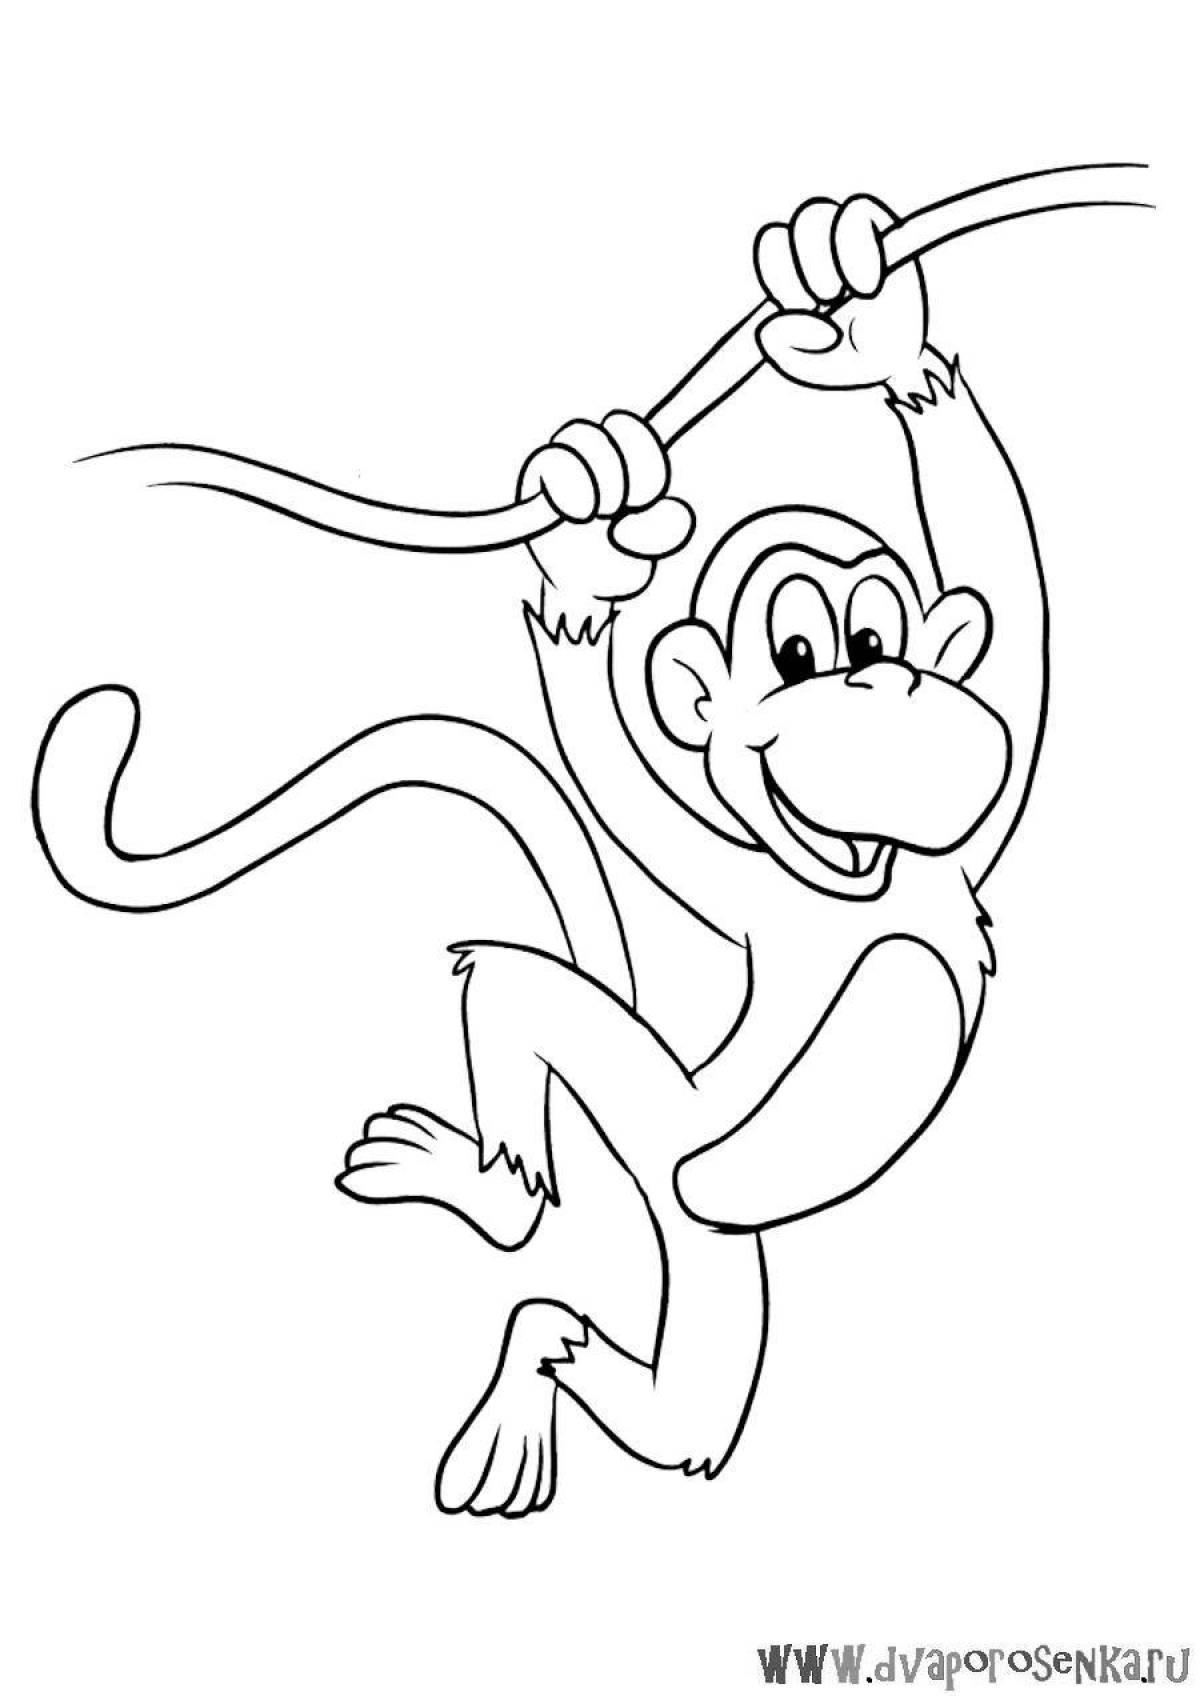 Впечатляющая раскраска обезьяны для детей